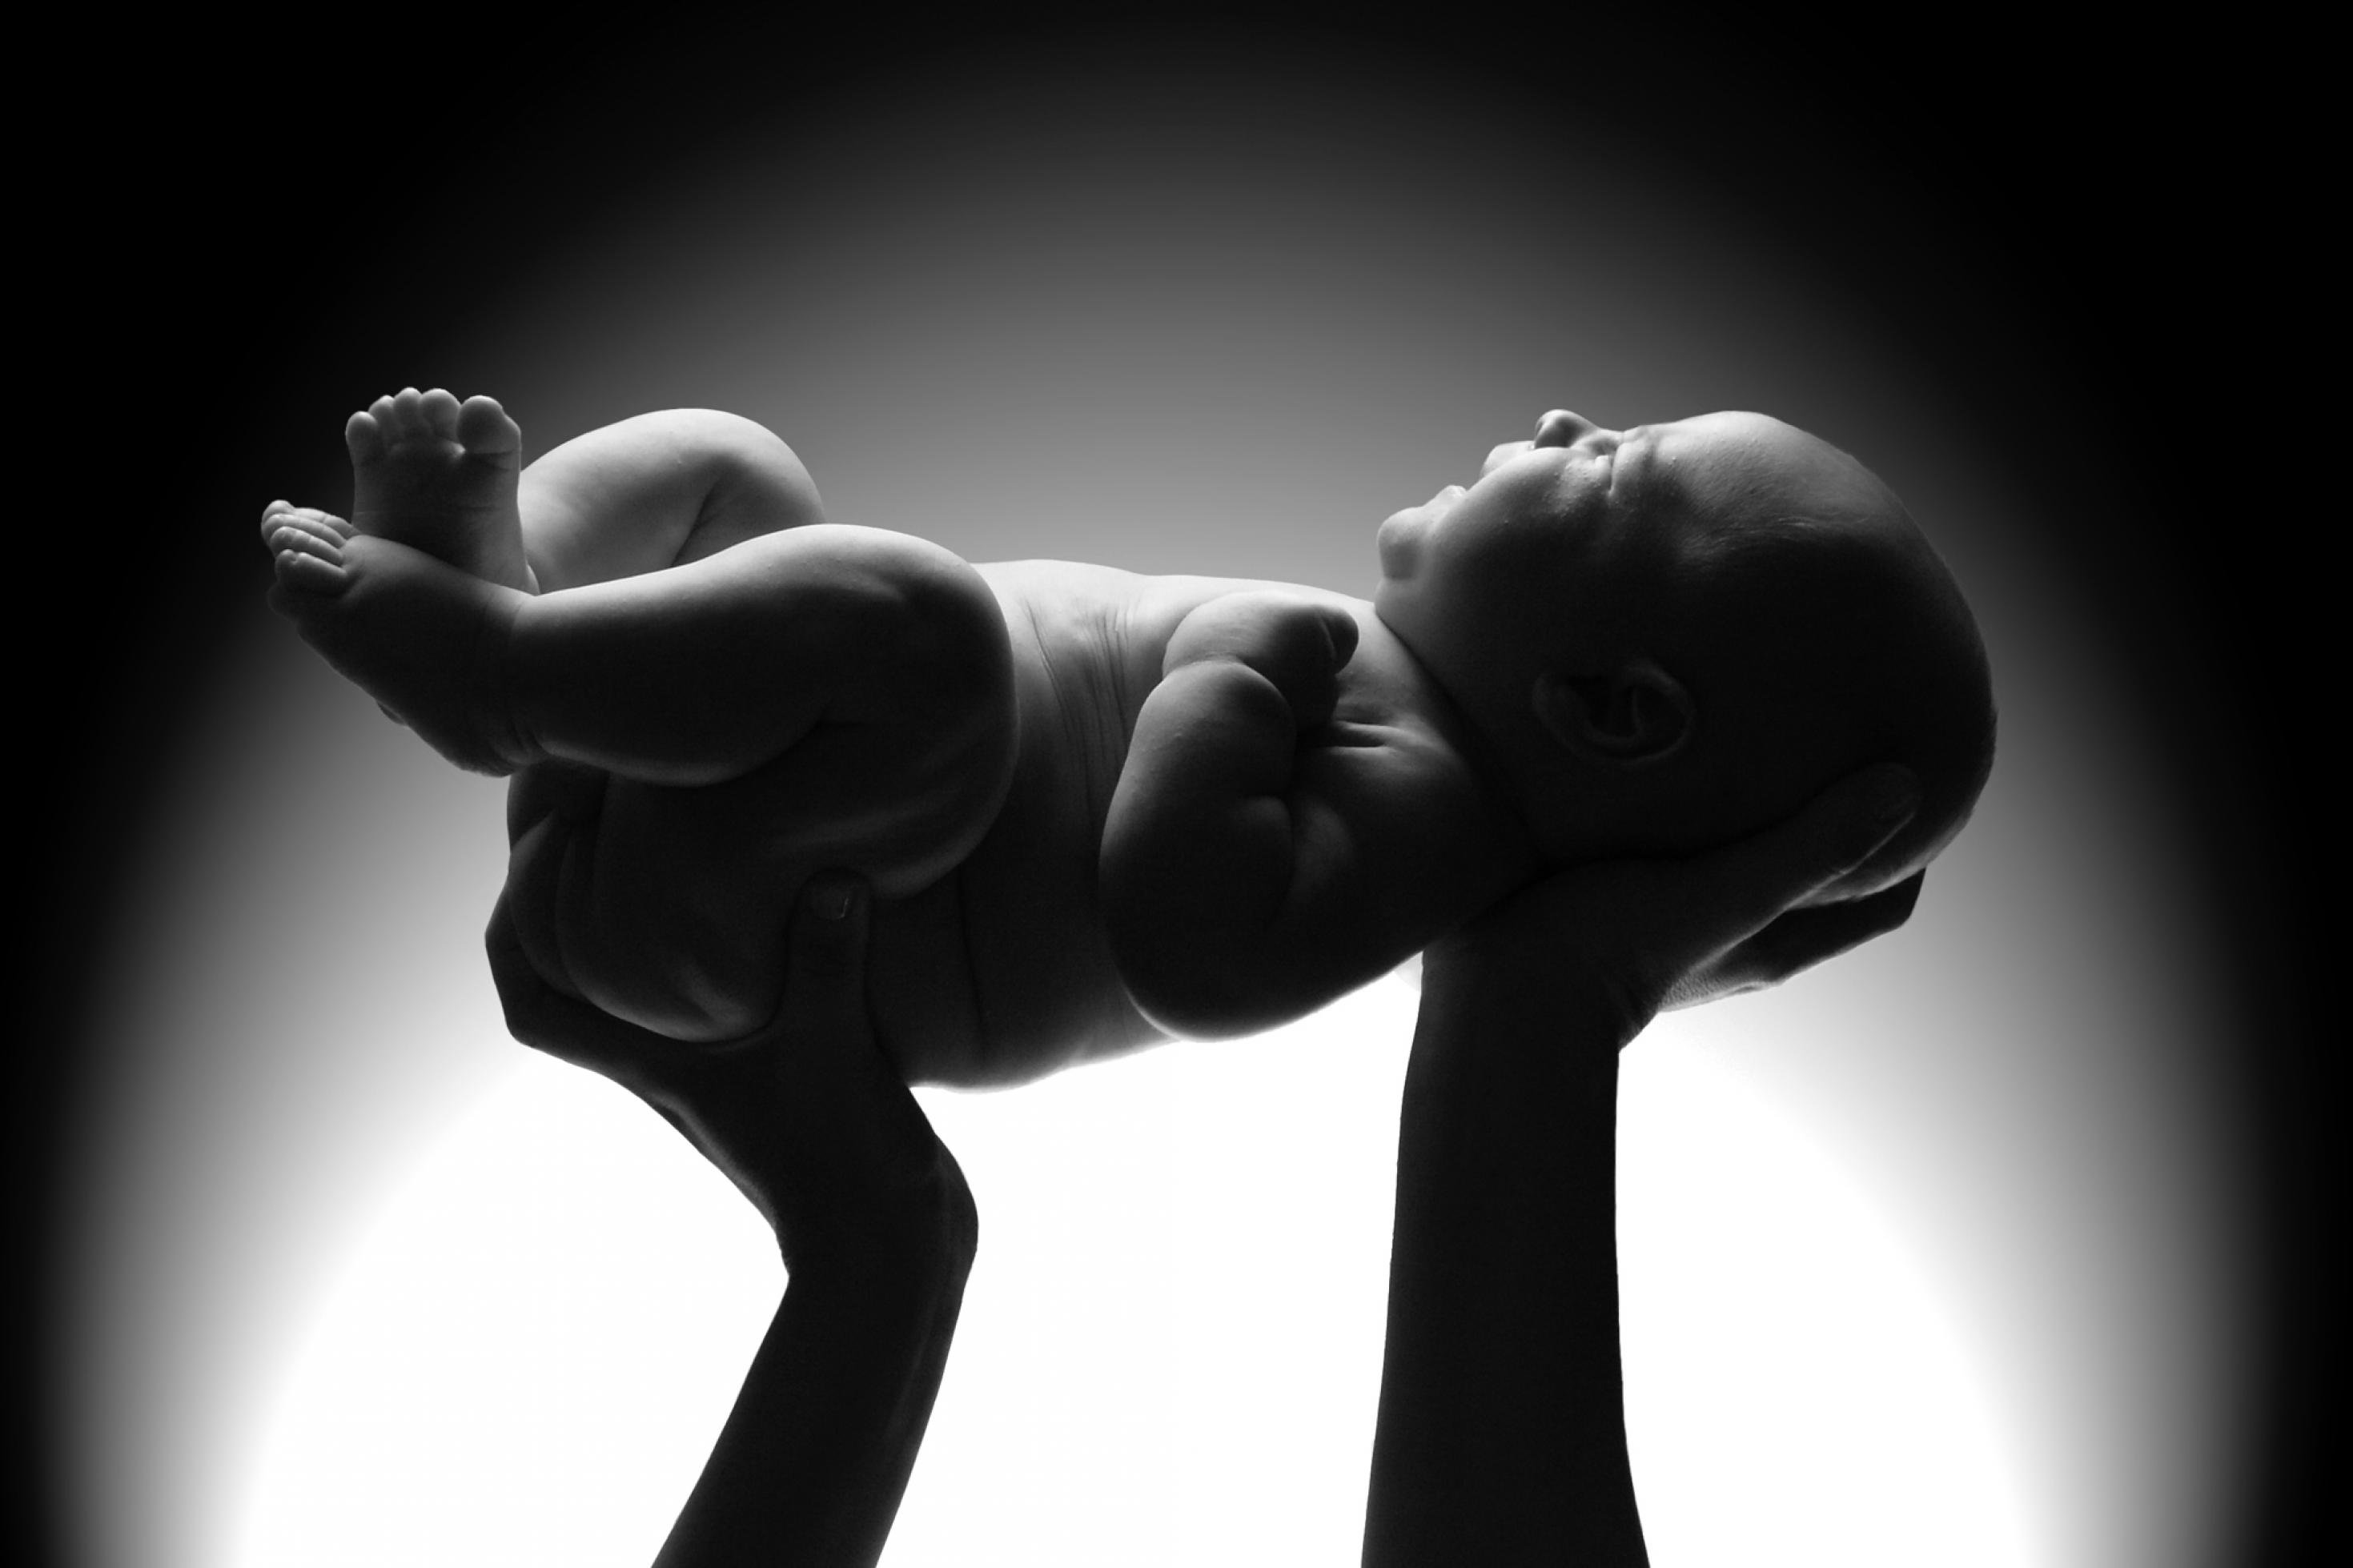 Das Schwarzweiß-Foto zeigt die von oben angeleuchtete Silhouette eines Neugeborenen, das von zwei aufragenden Armen und Händen vor einem hellen Hintergrund hochgehalten wird.